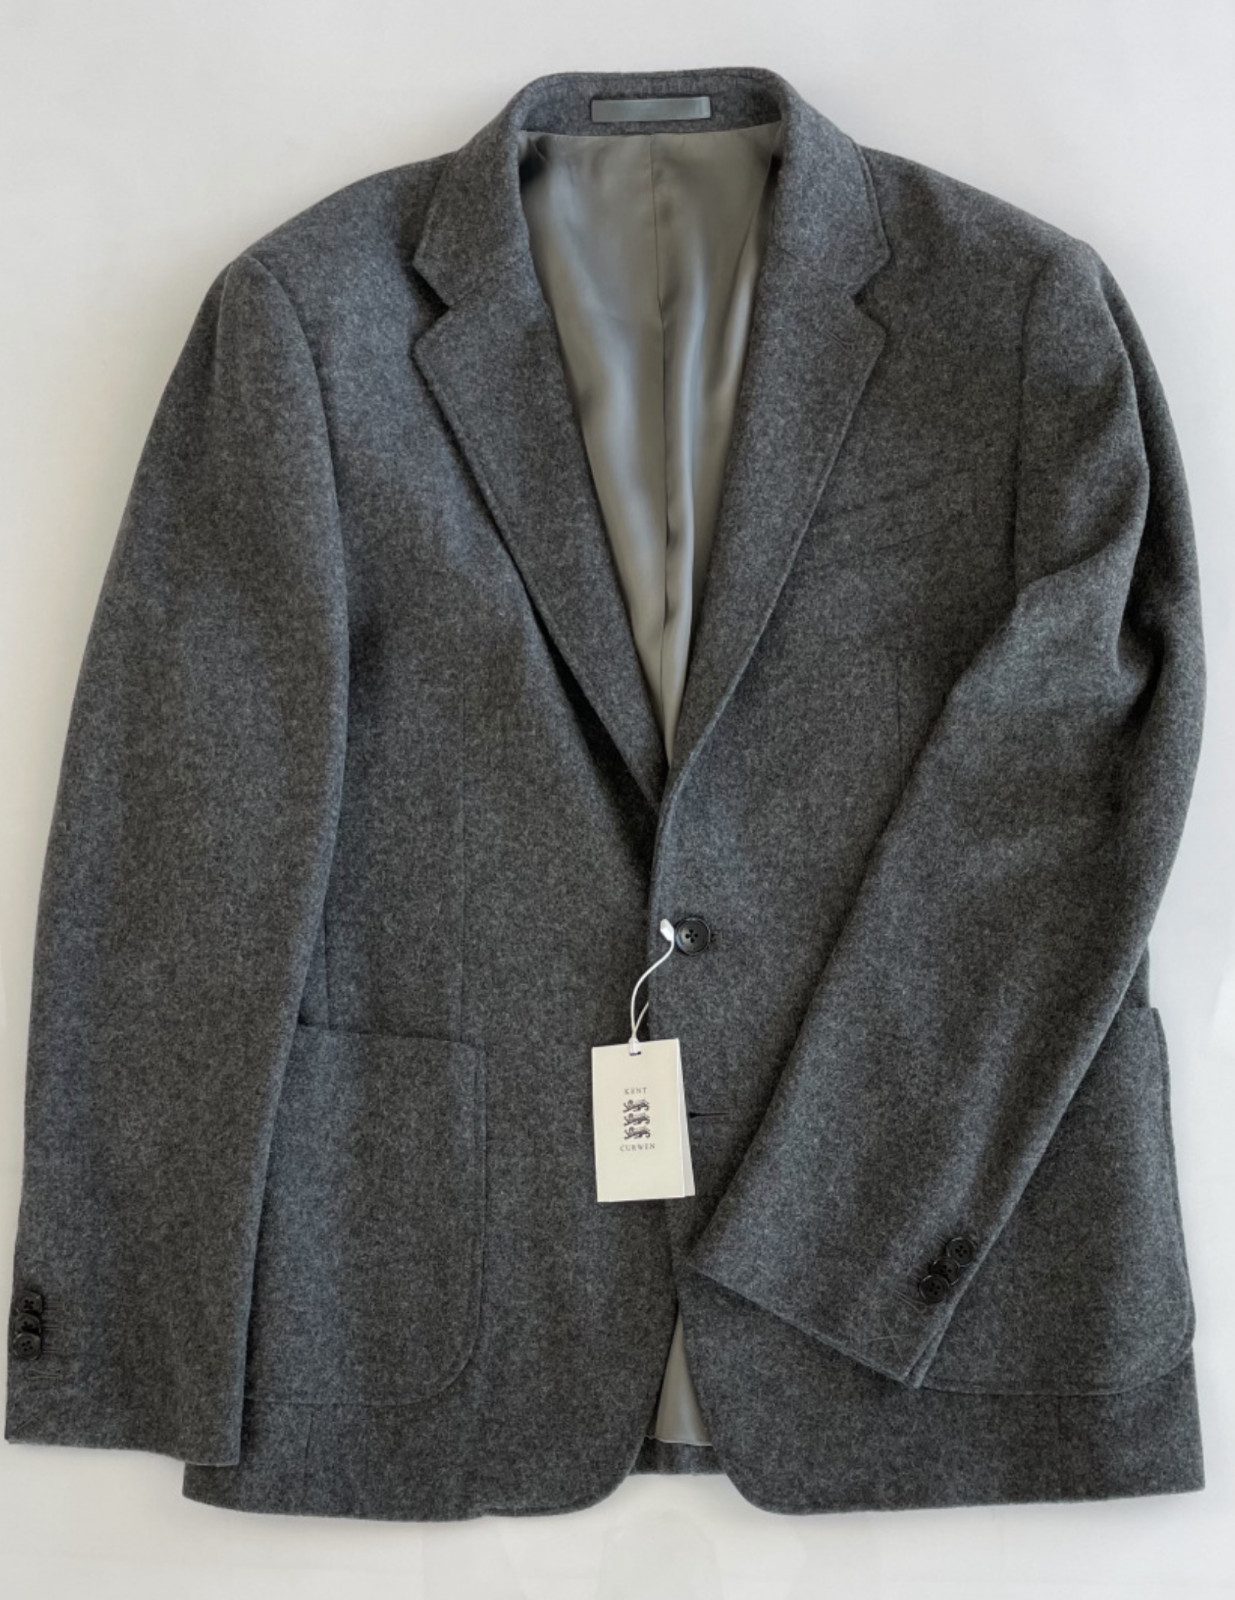 KENT AND CURWEN Sakko Kent & Curwen Iconic Peaky Blinders Collection Wool Blazer Sakko Jacke